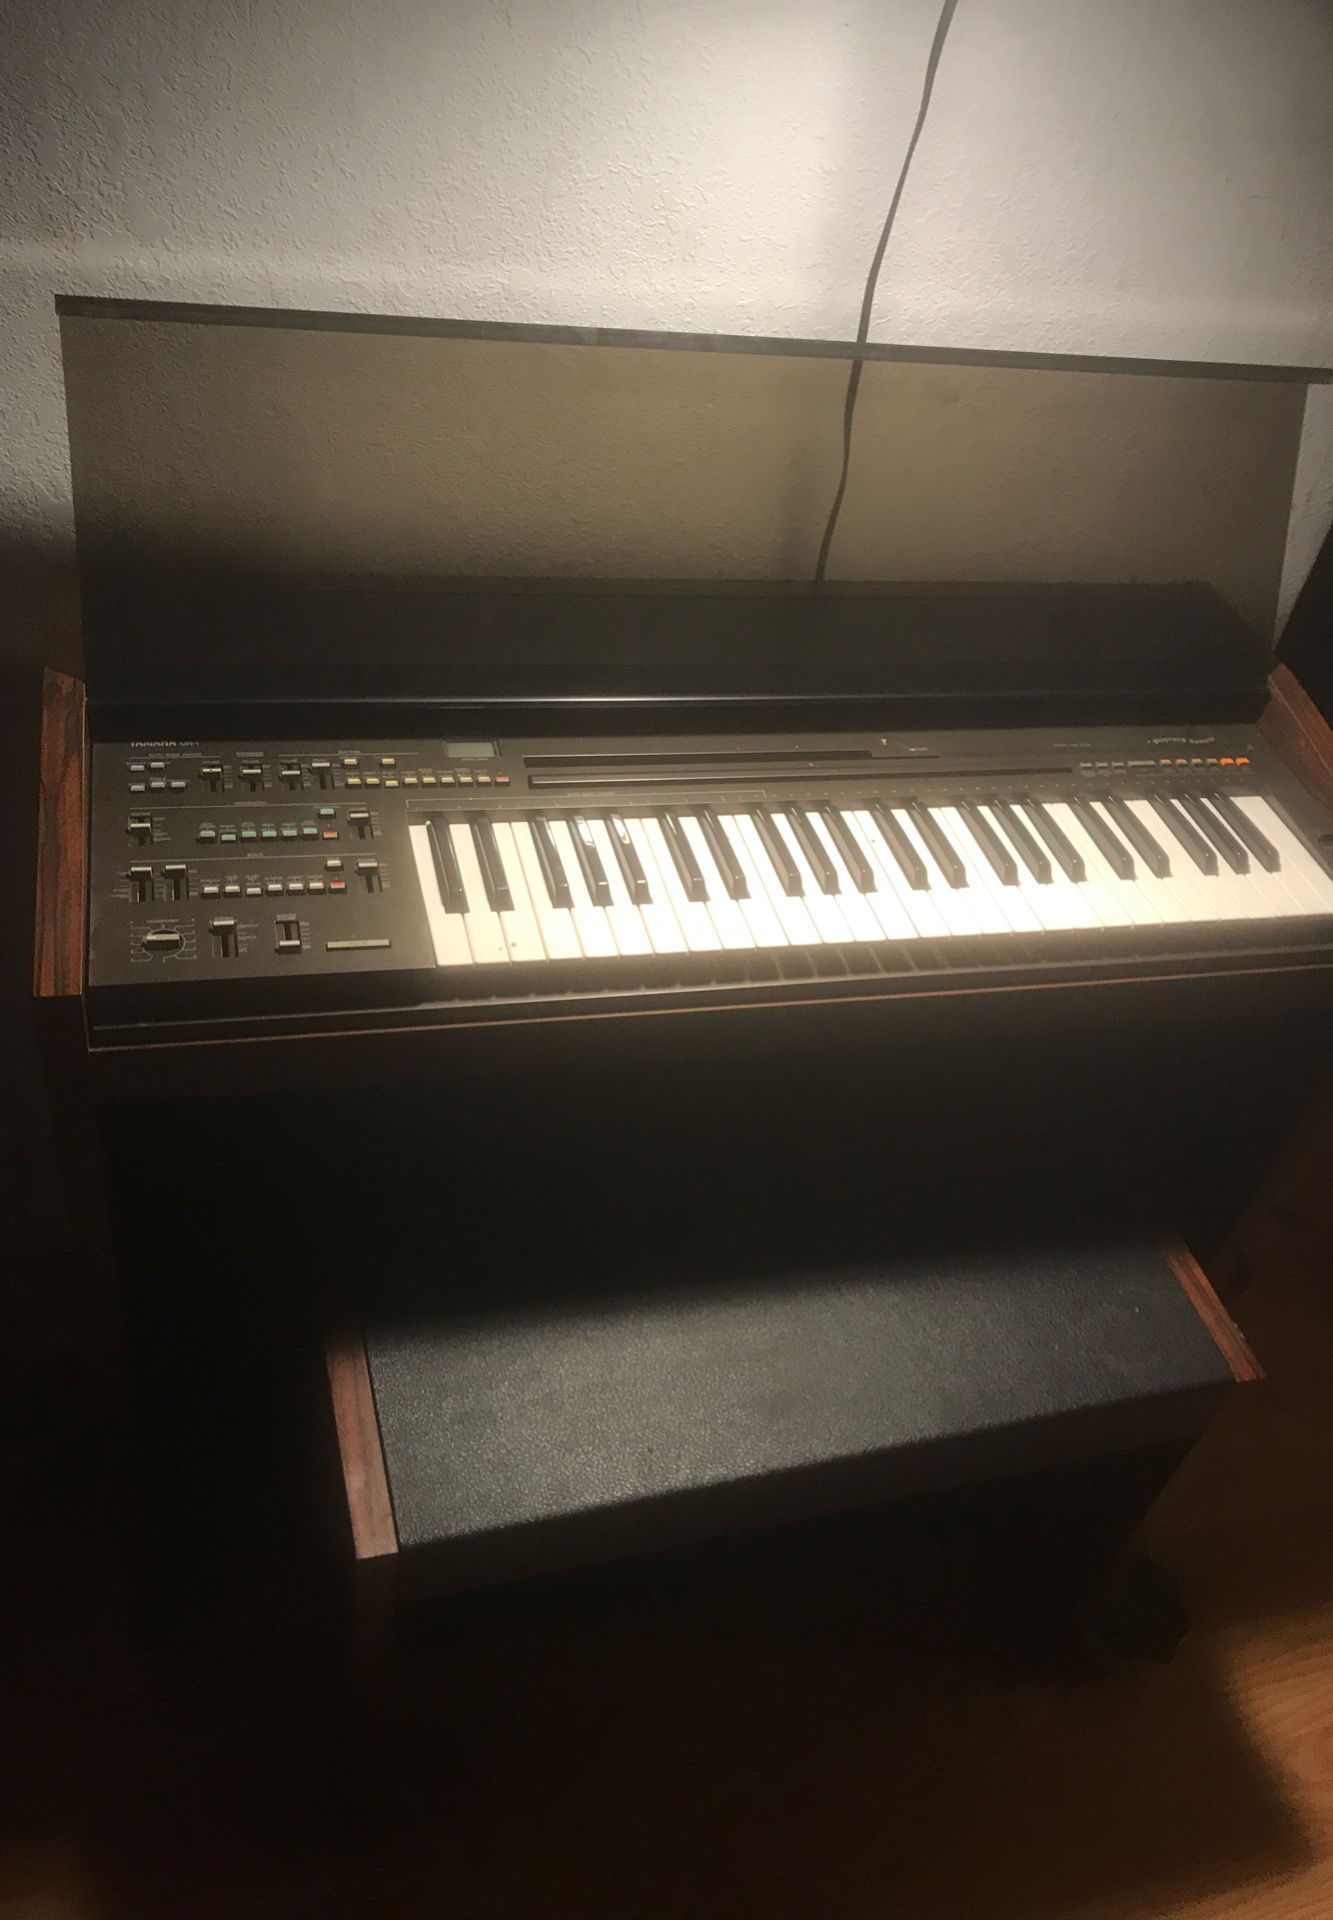 Wood mirror & Yamaha keyboard